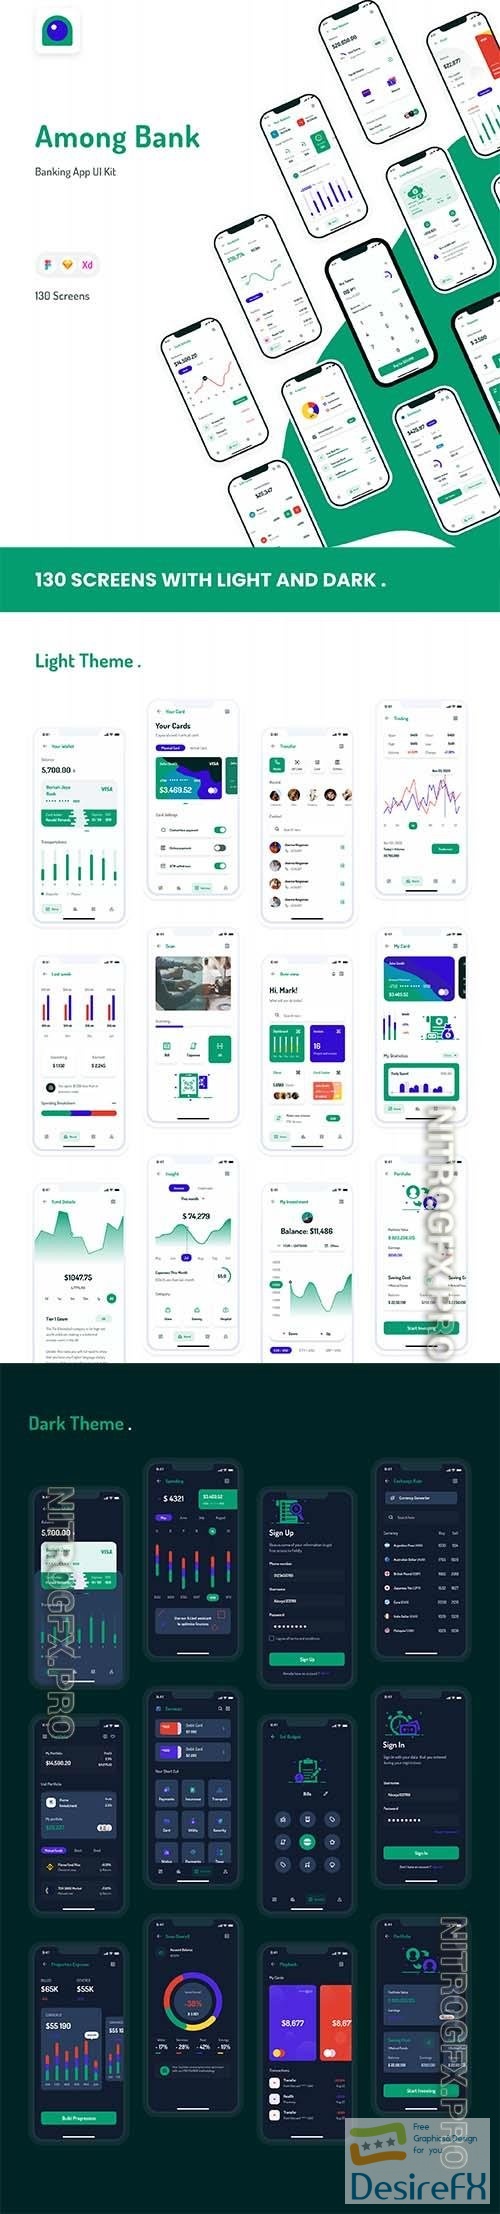 Among Bank - Banking App UI Kit - UI8